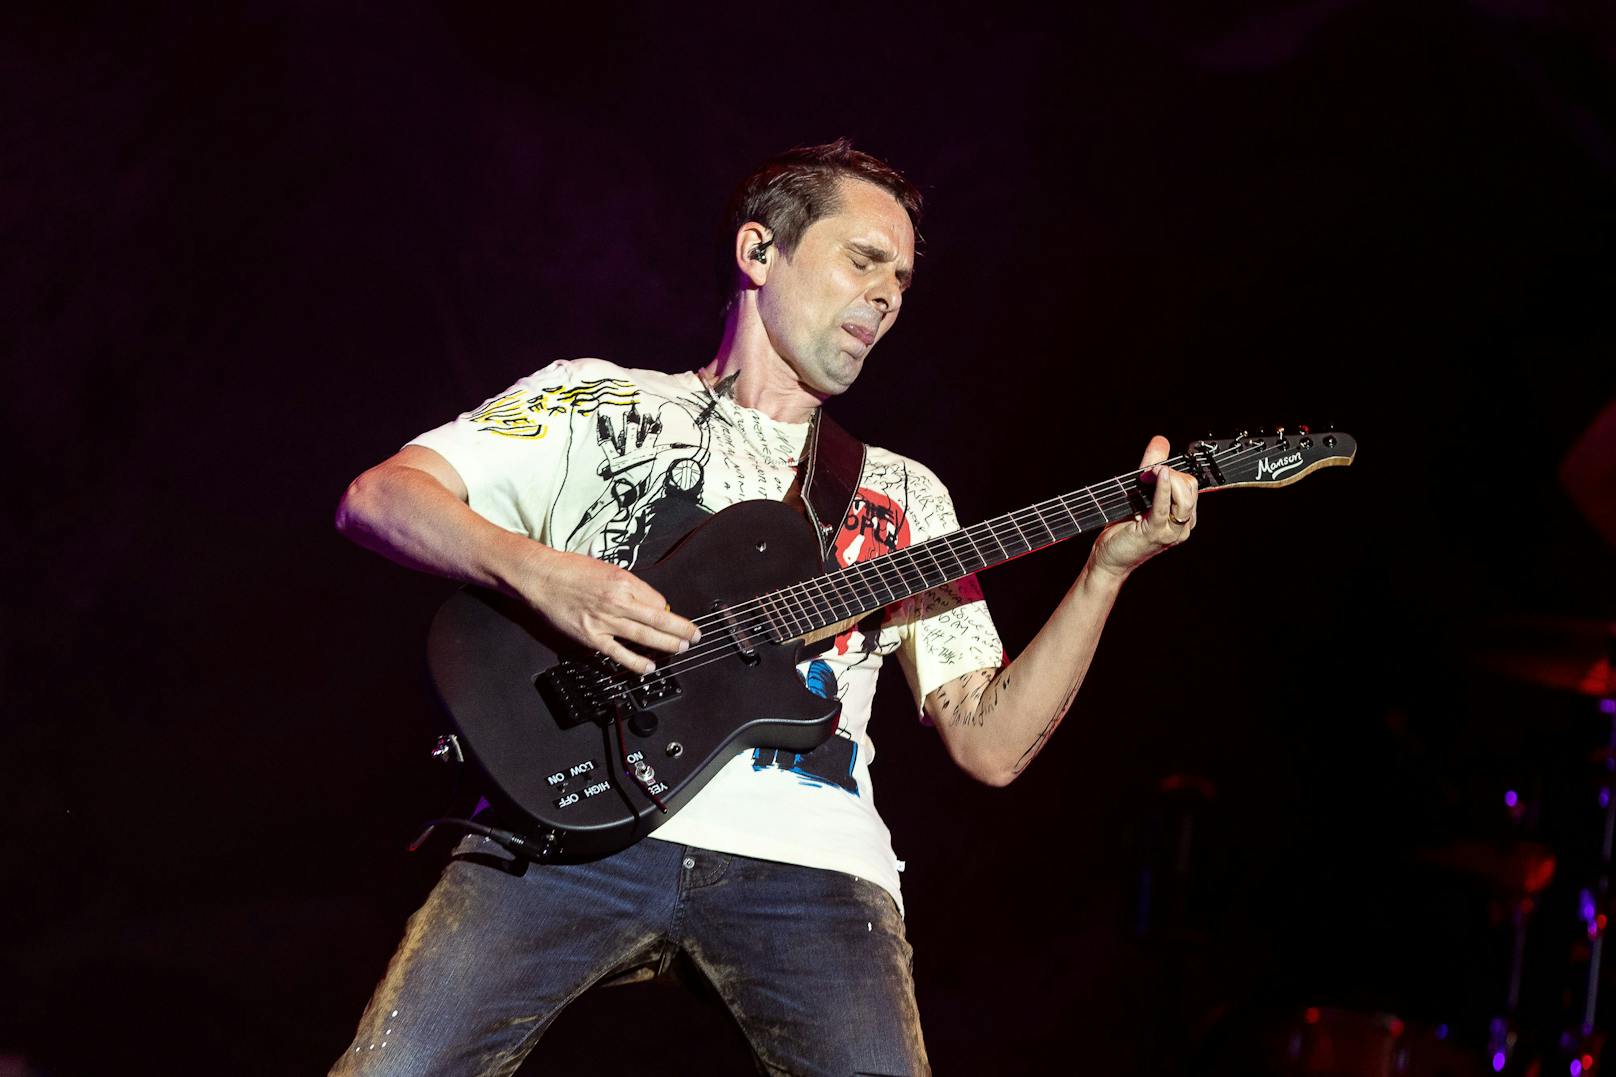 Sänger Matthew Bellamy von der Band "Muse" während eines Konzertes auf der "Blue Stage" im Rahmen des "Nova Rock 2022" Festivals 